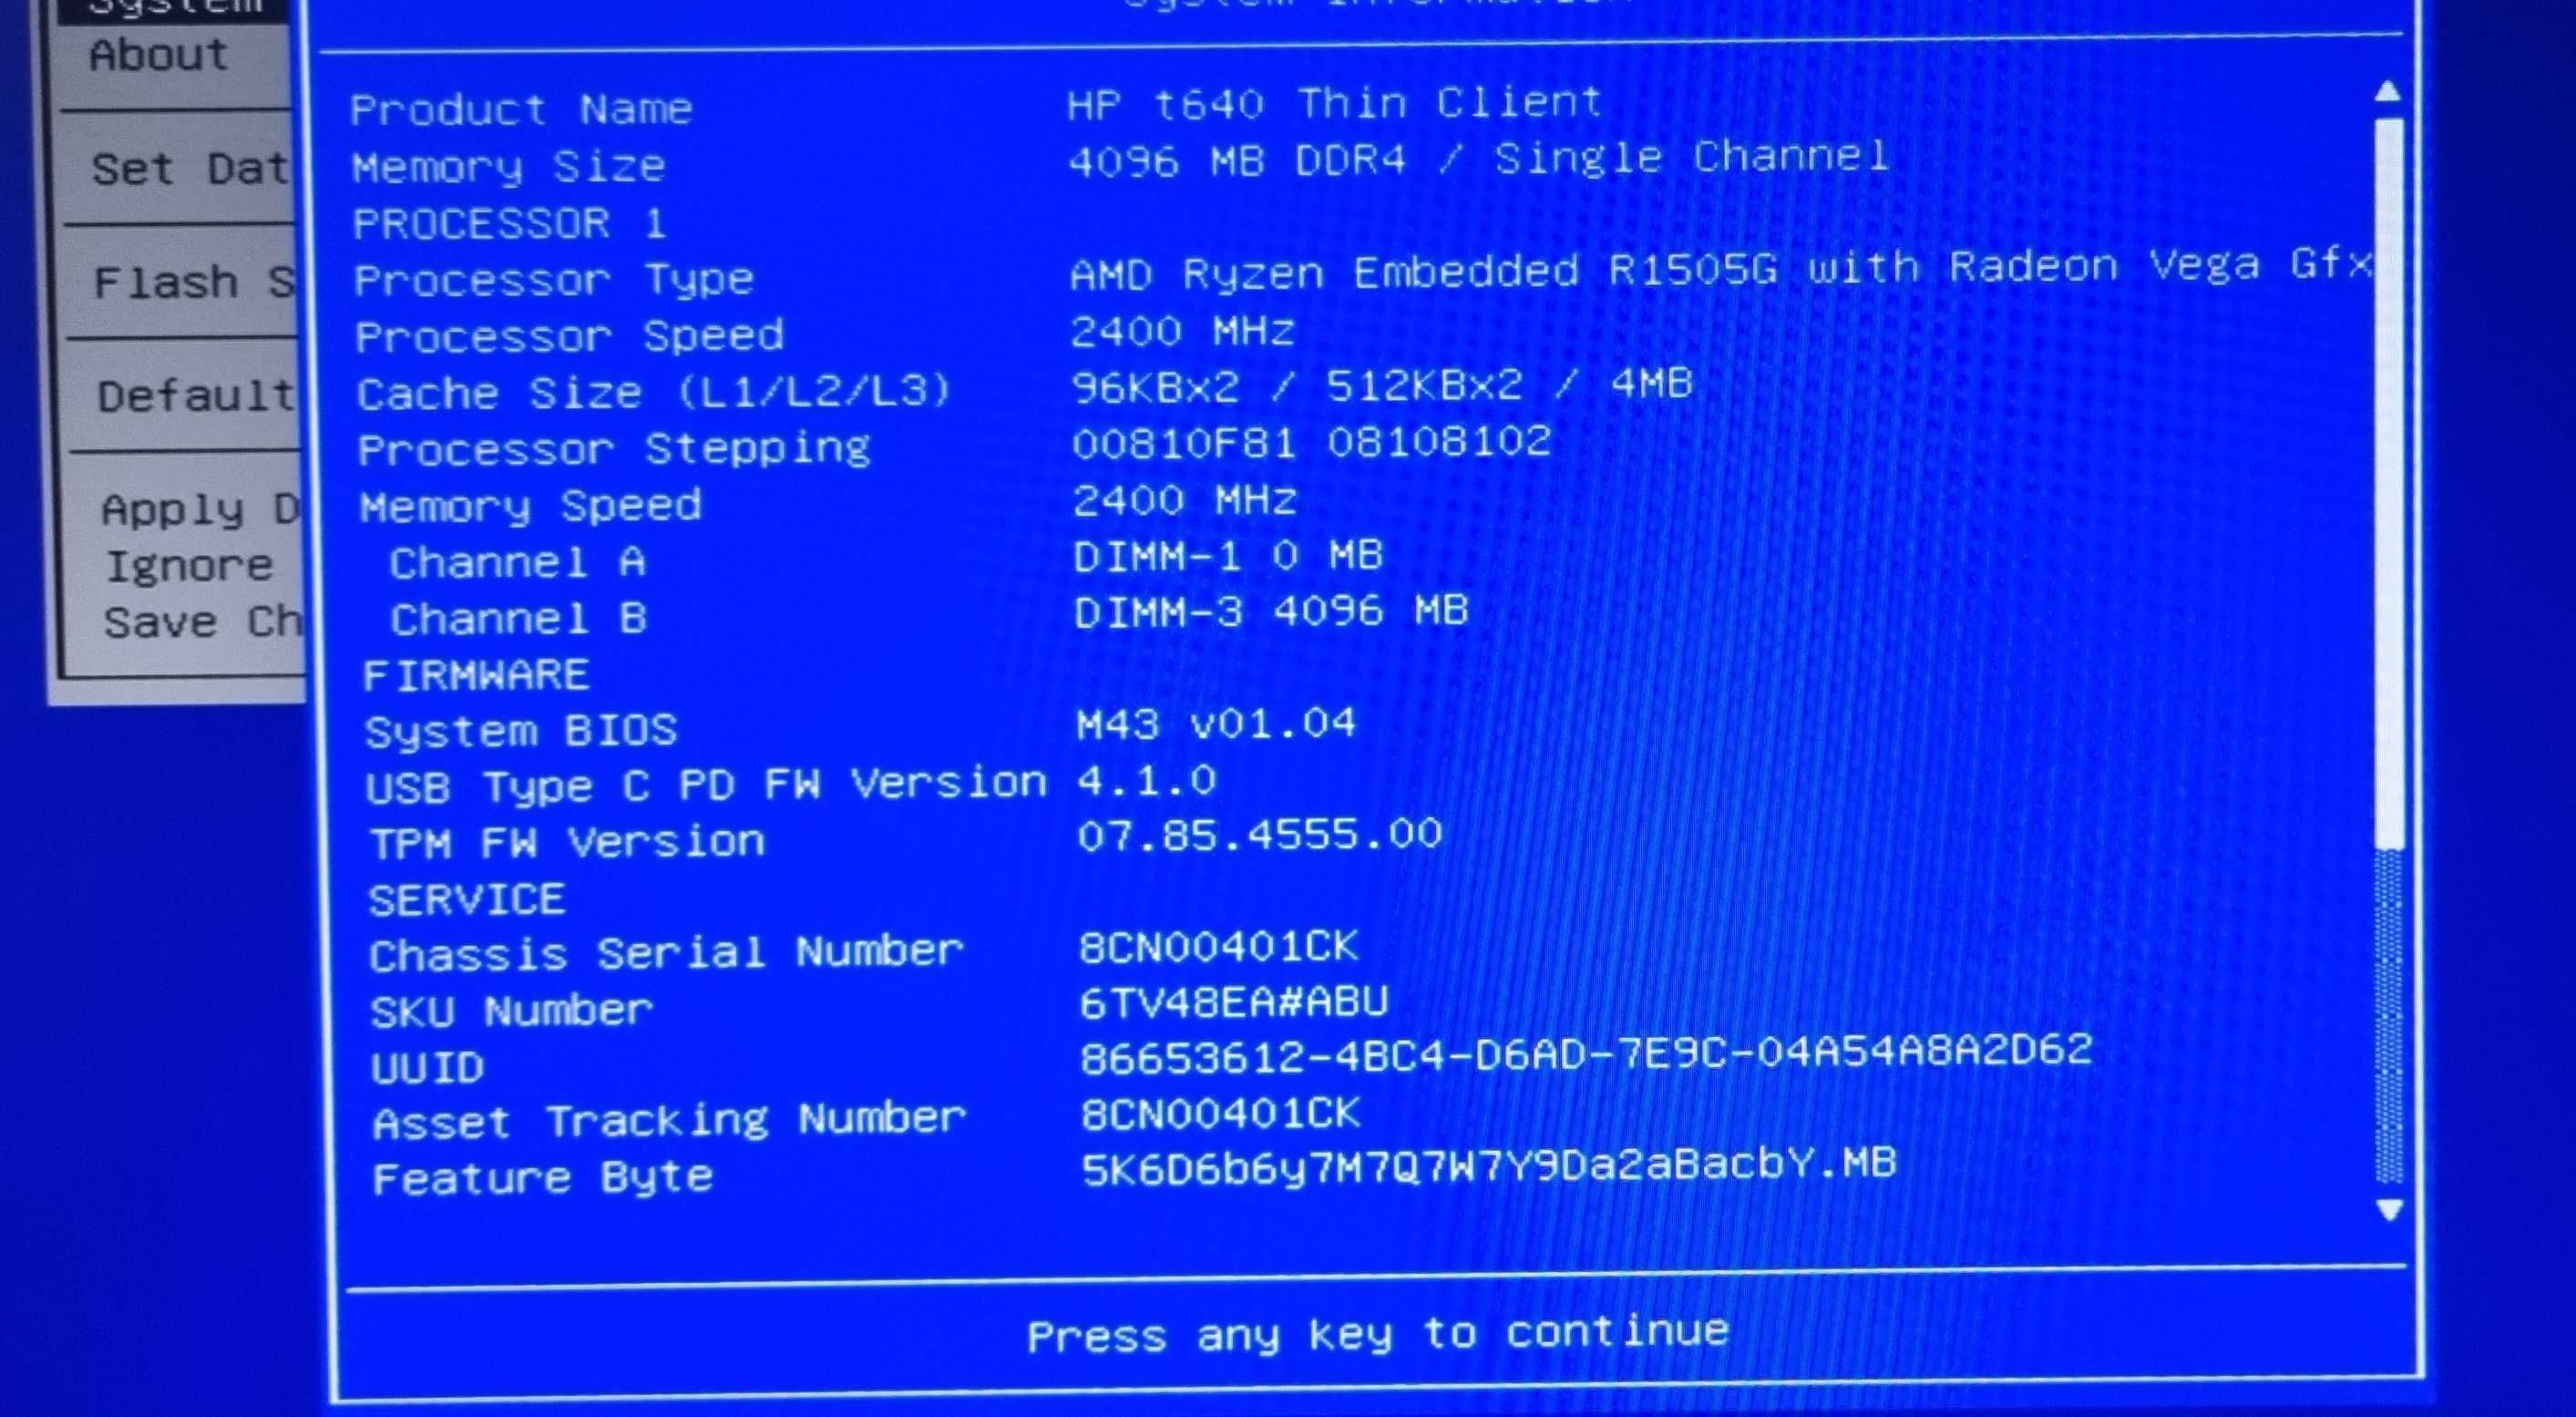 HP T640 thin client